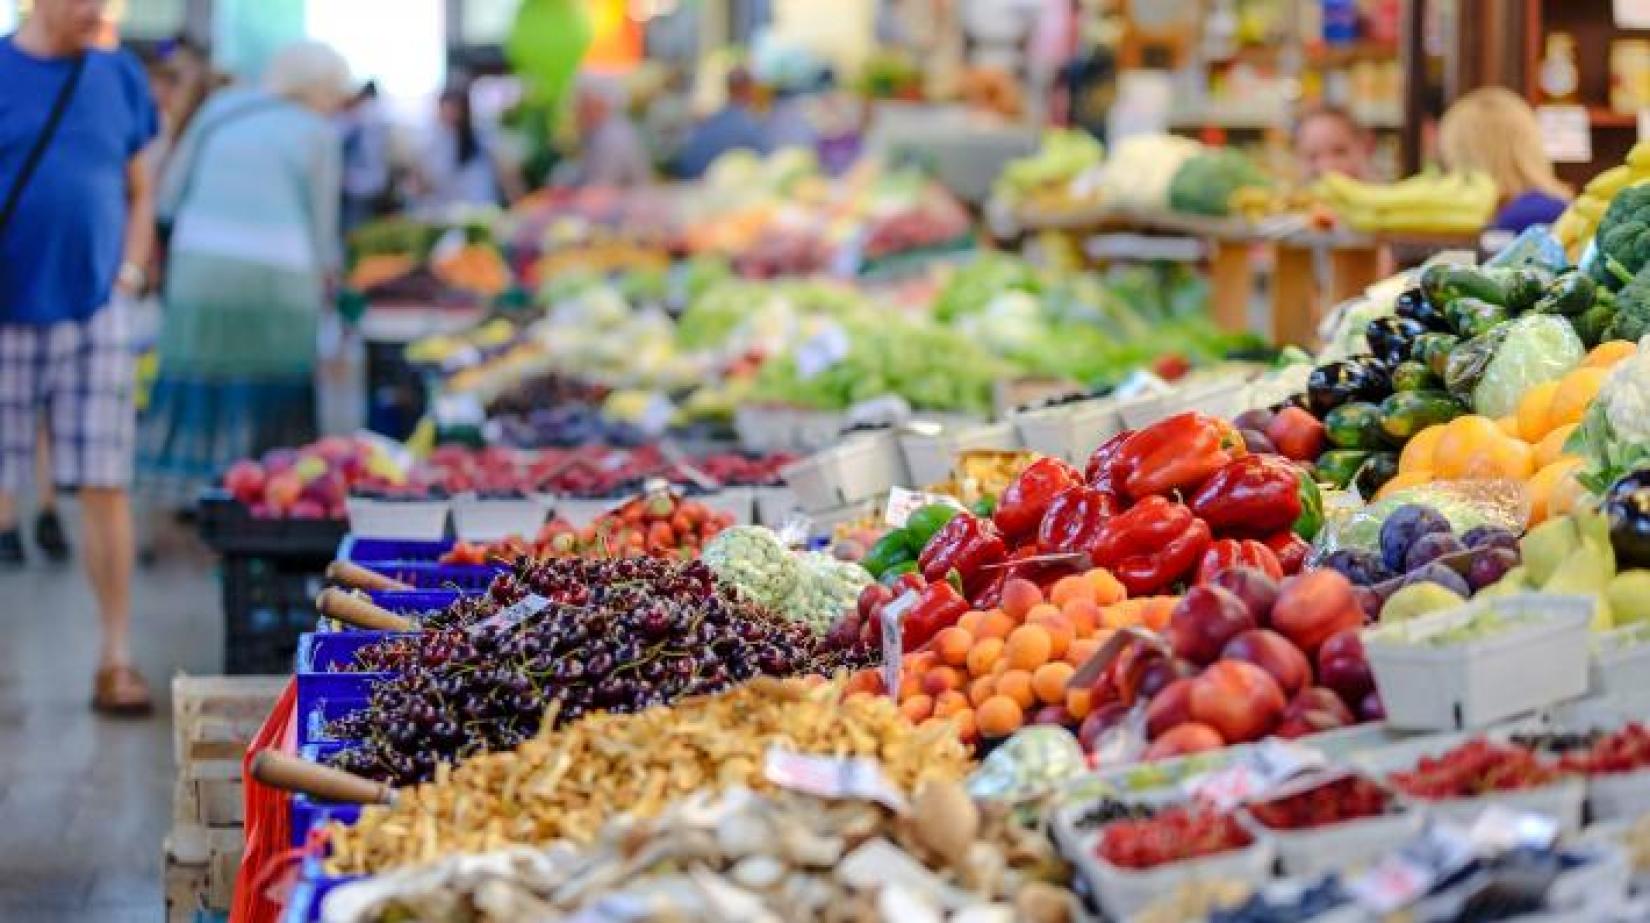 O relatório pede ajustes significativos na produção de alimentos, bem como mudanças no consumo das pessoas. Foto: ONU Meio Ambiente